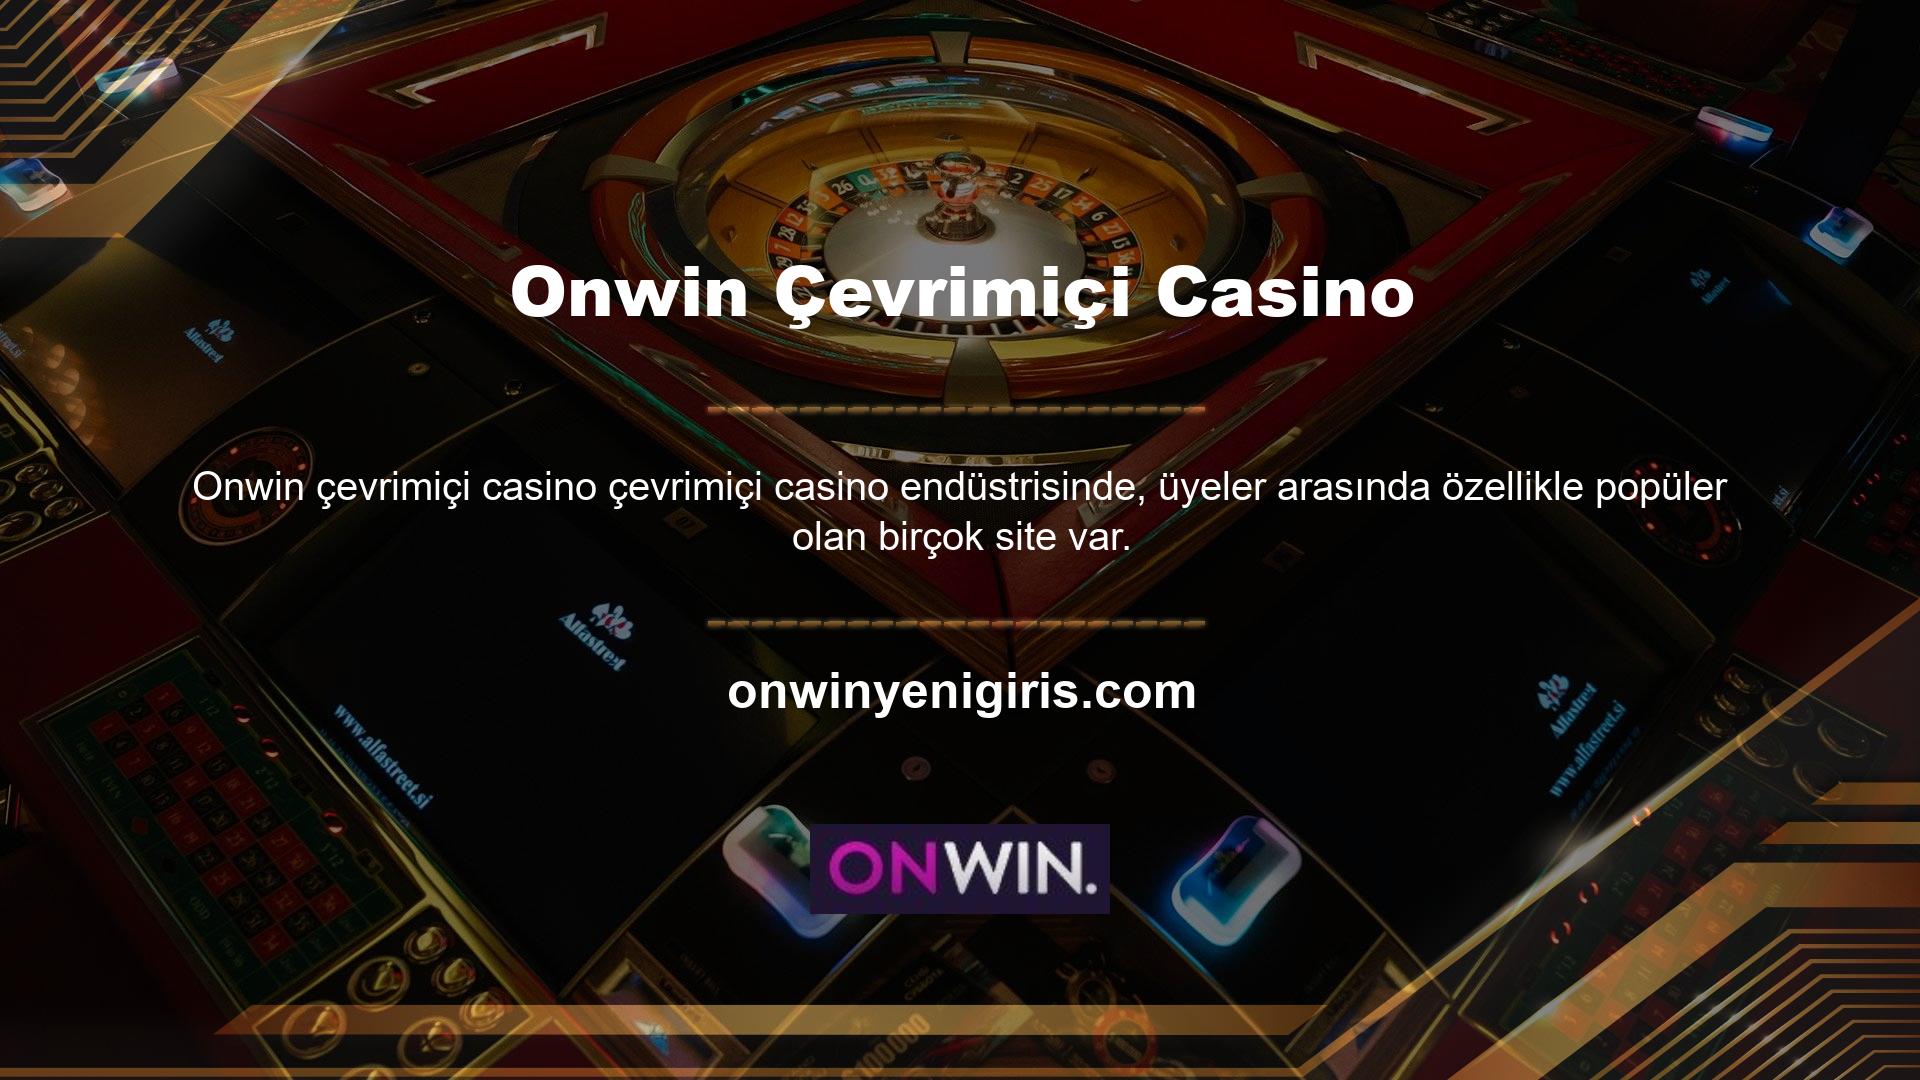 Yabancı lisanslı bir casino sitesinin aktif üye sayısı arttıkça siteye olan güvenin de arttığı söylenebilir